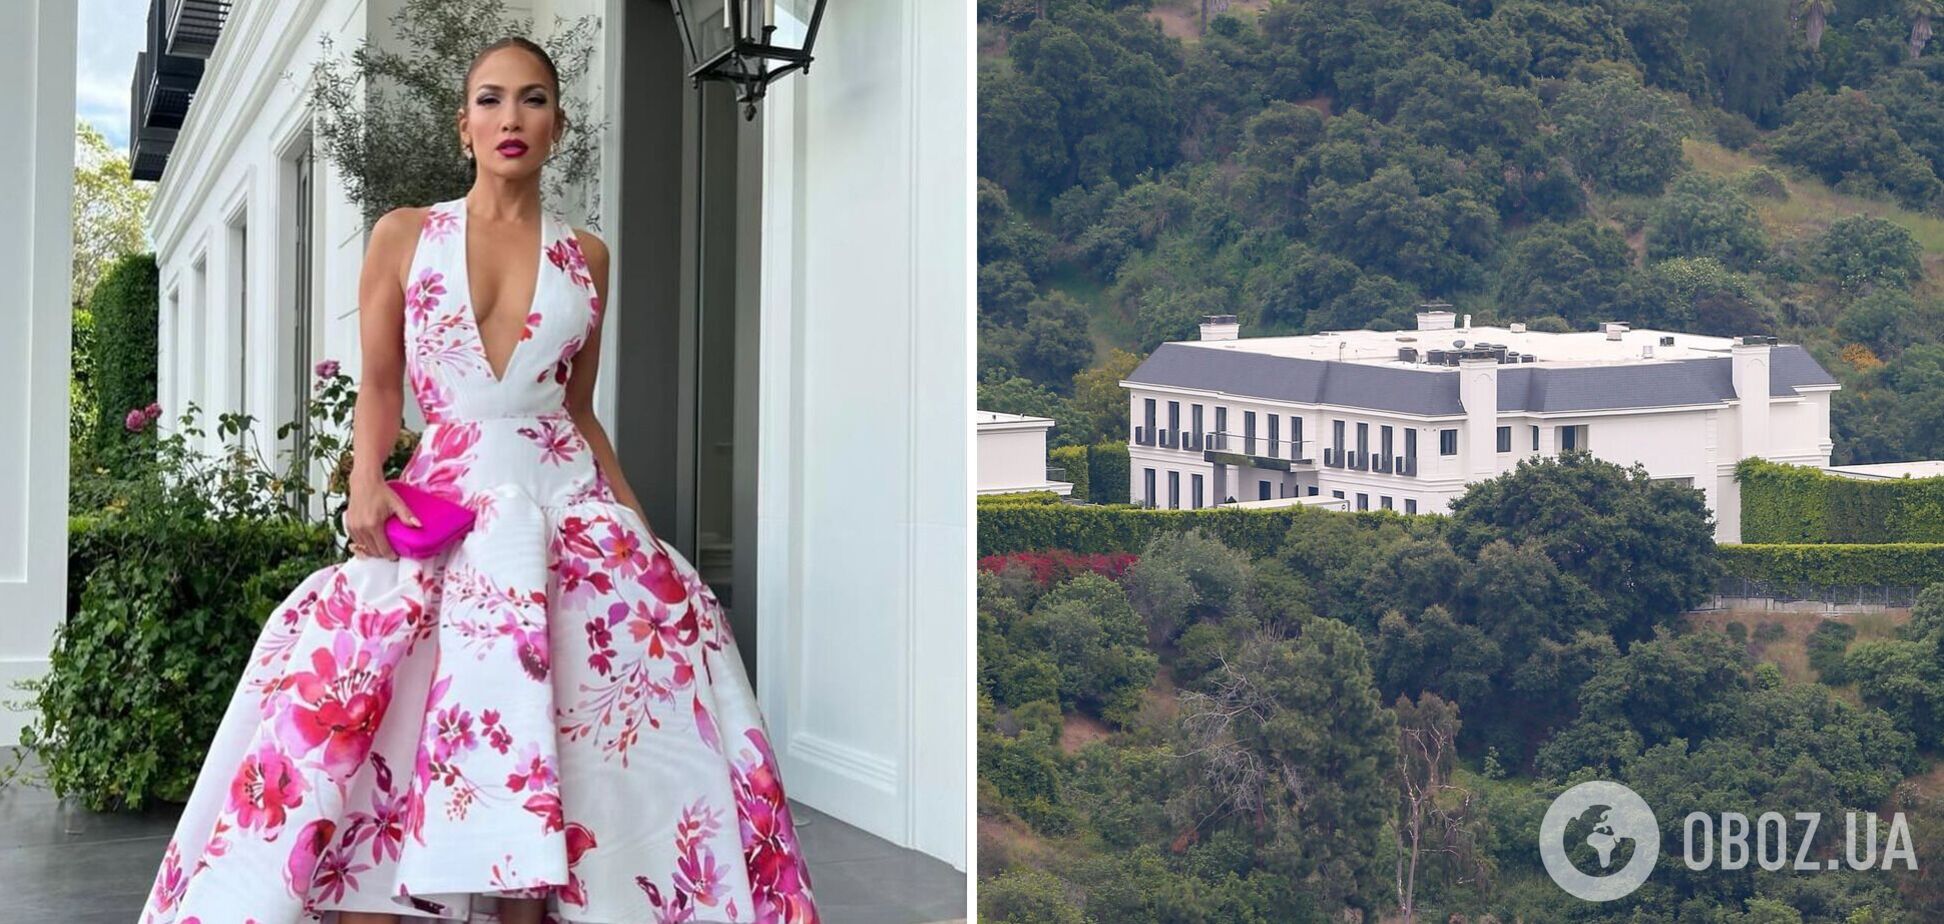 Дженніфер Лопес показала свій розкішний будинок за $60 мільйонів, де живе з Беном Аффлеком. Фото